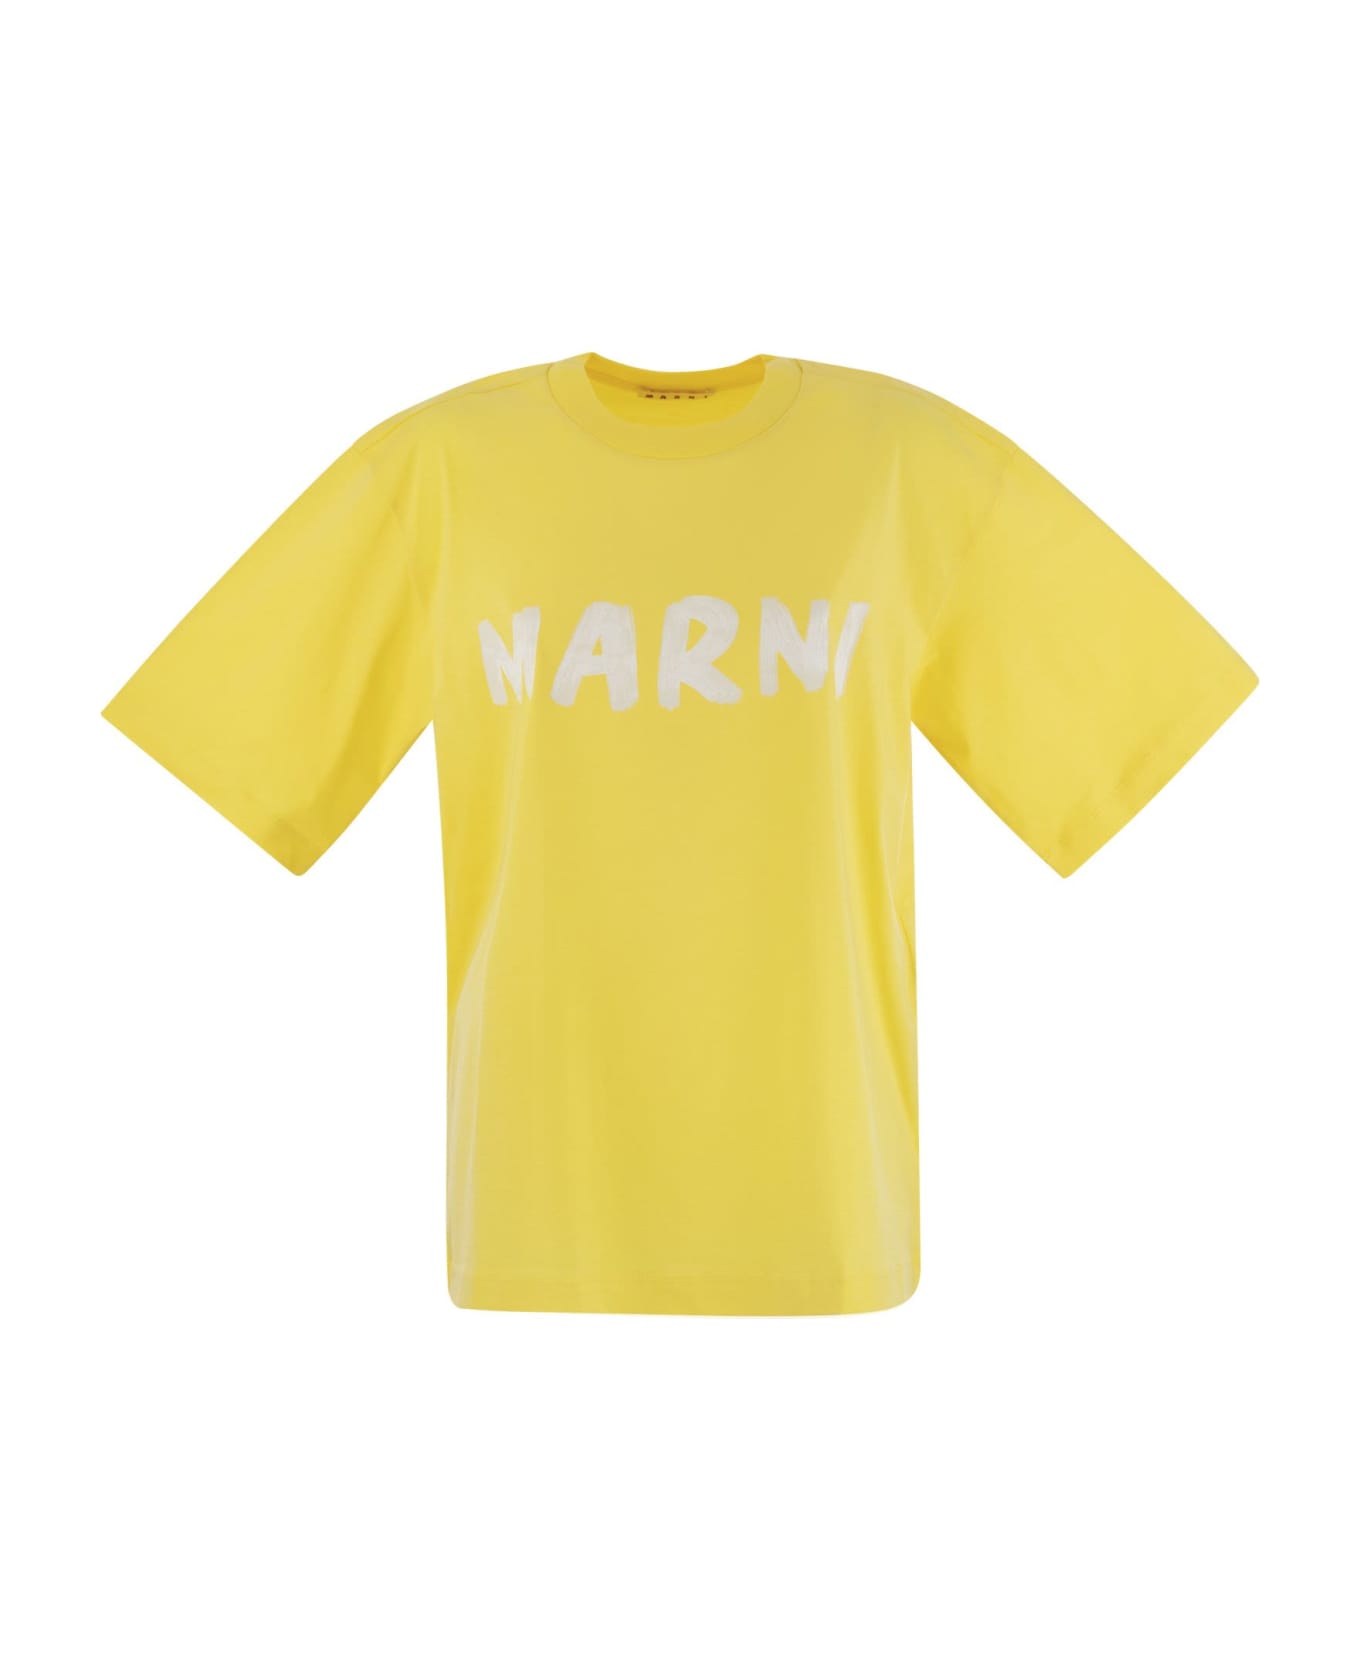 Marni Cotton Jersey T-shirt With Marni Print - Yellow